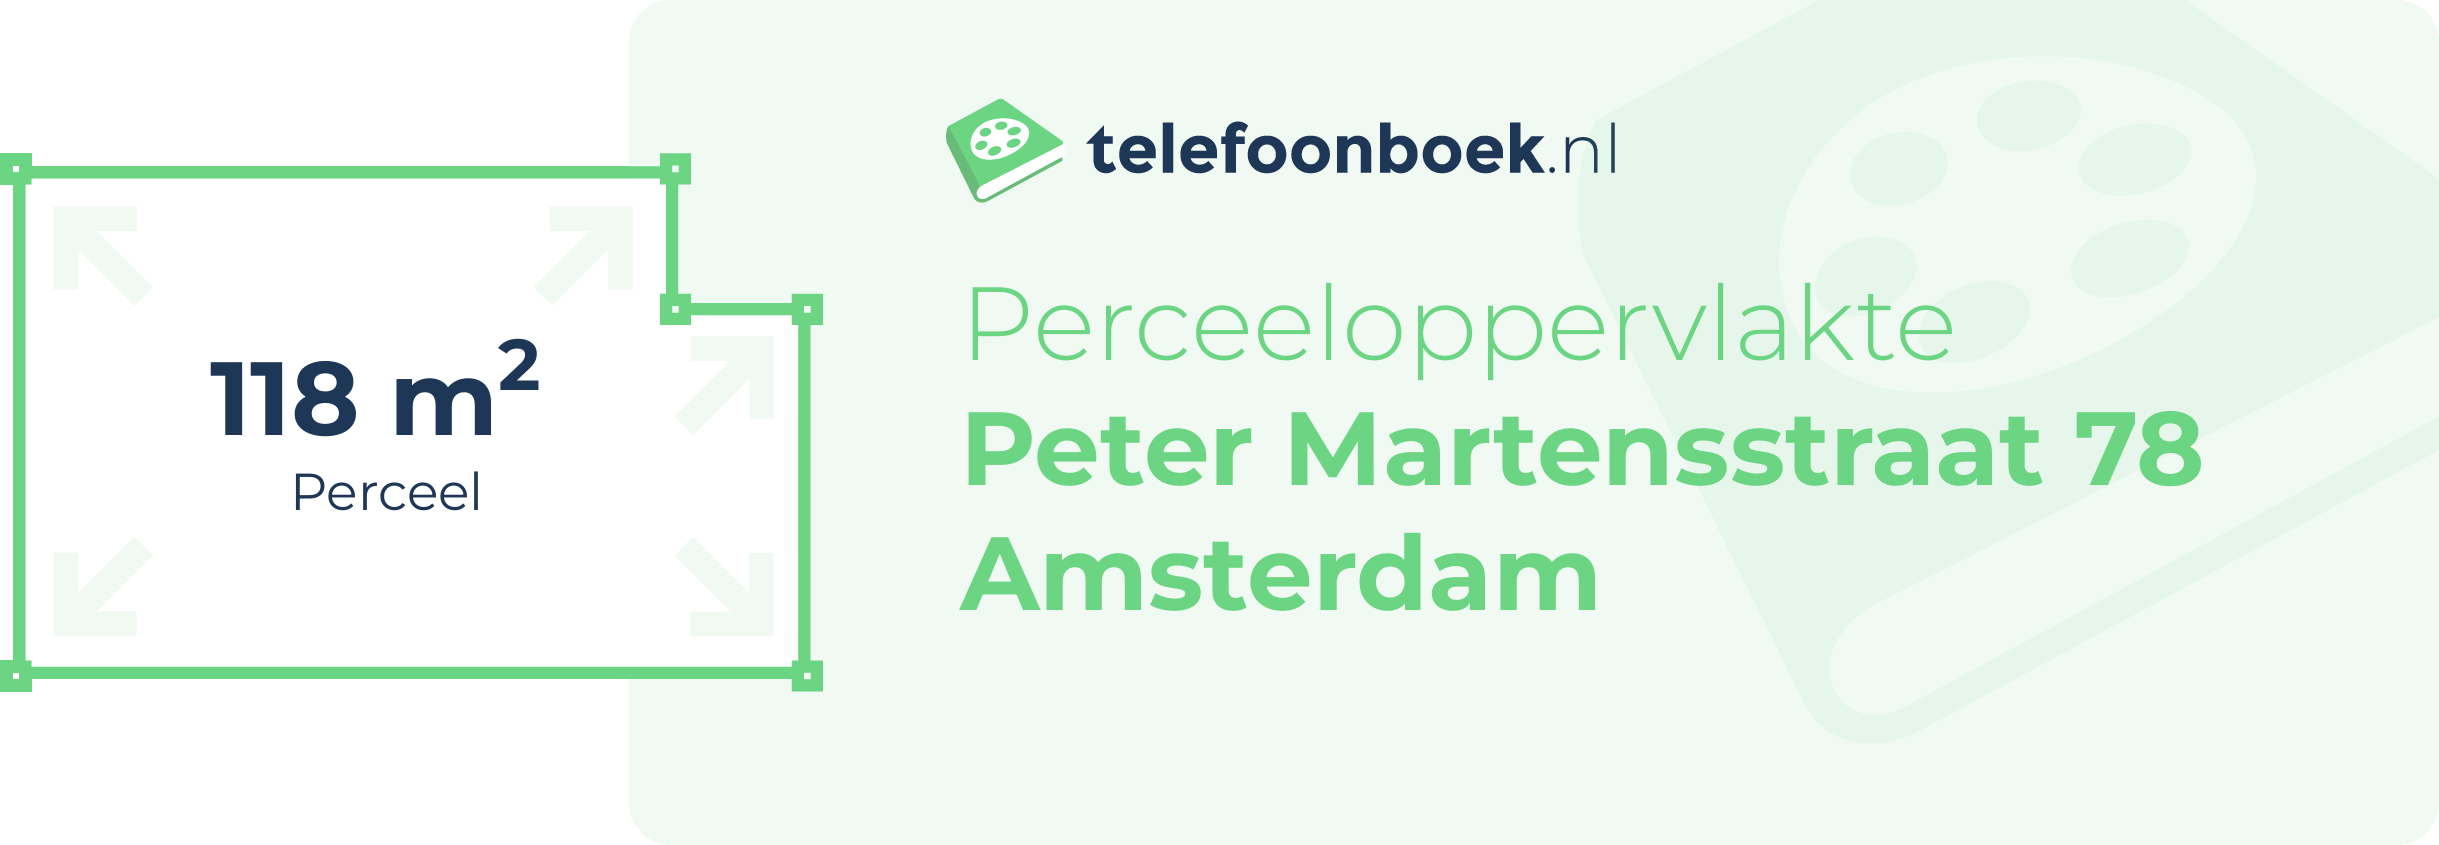 Perceeloppervlakte Peter Martensstraat 78 Amsterdam